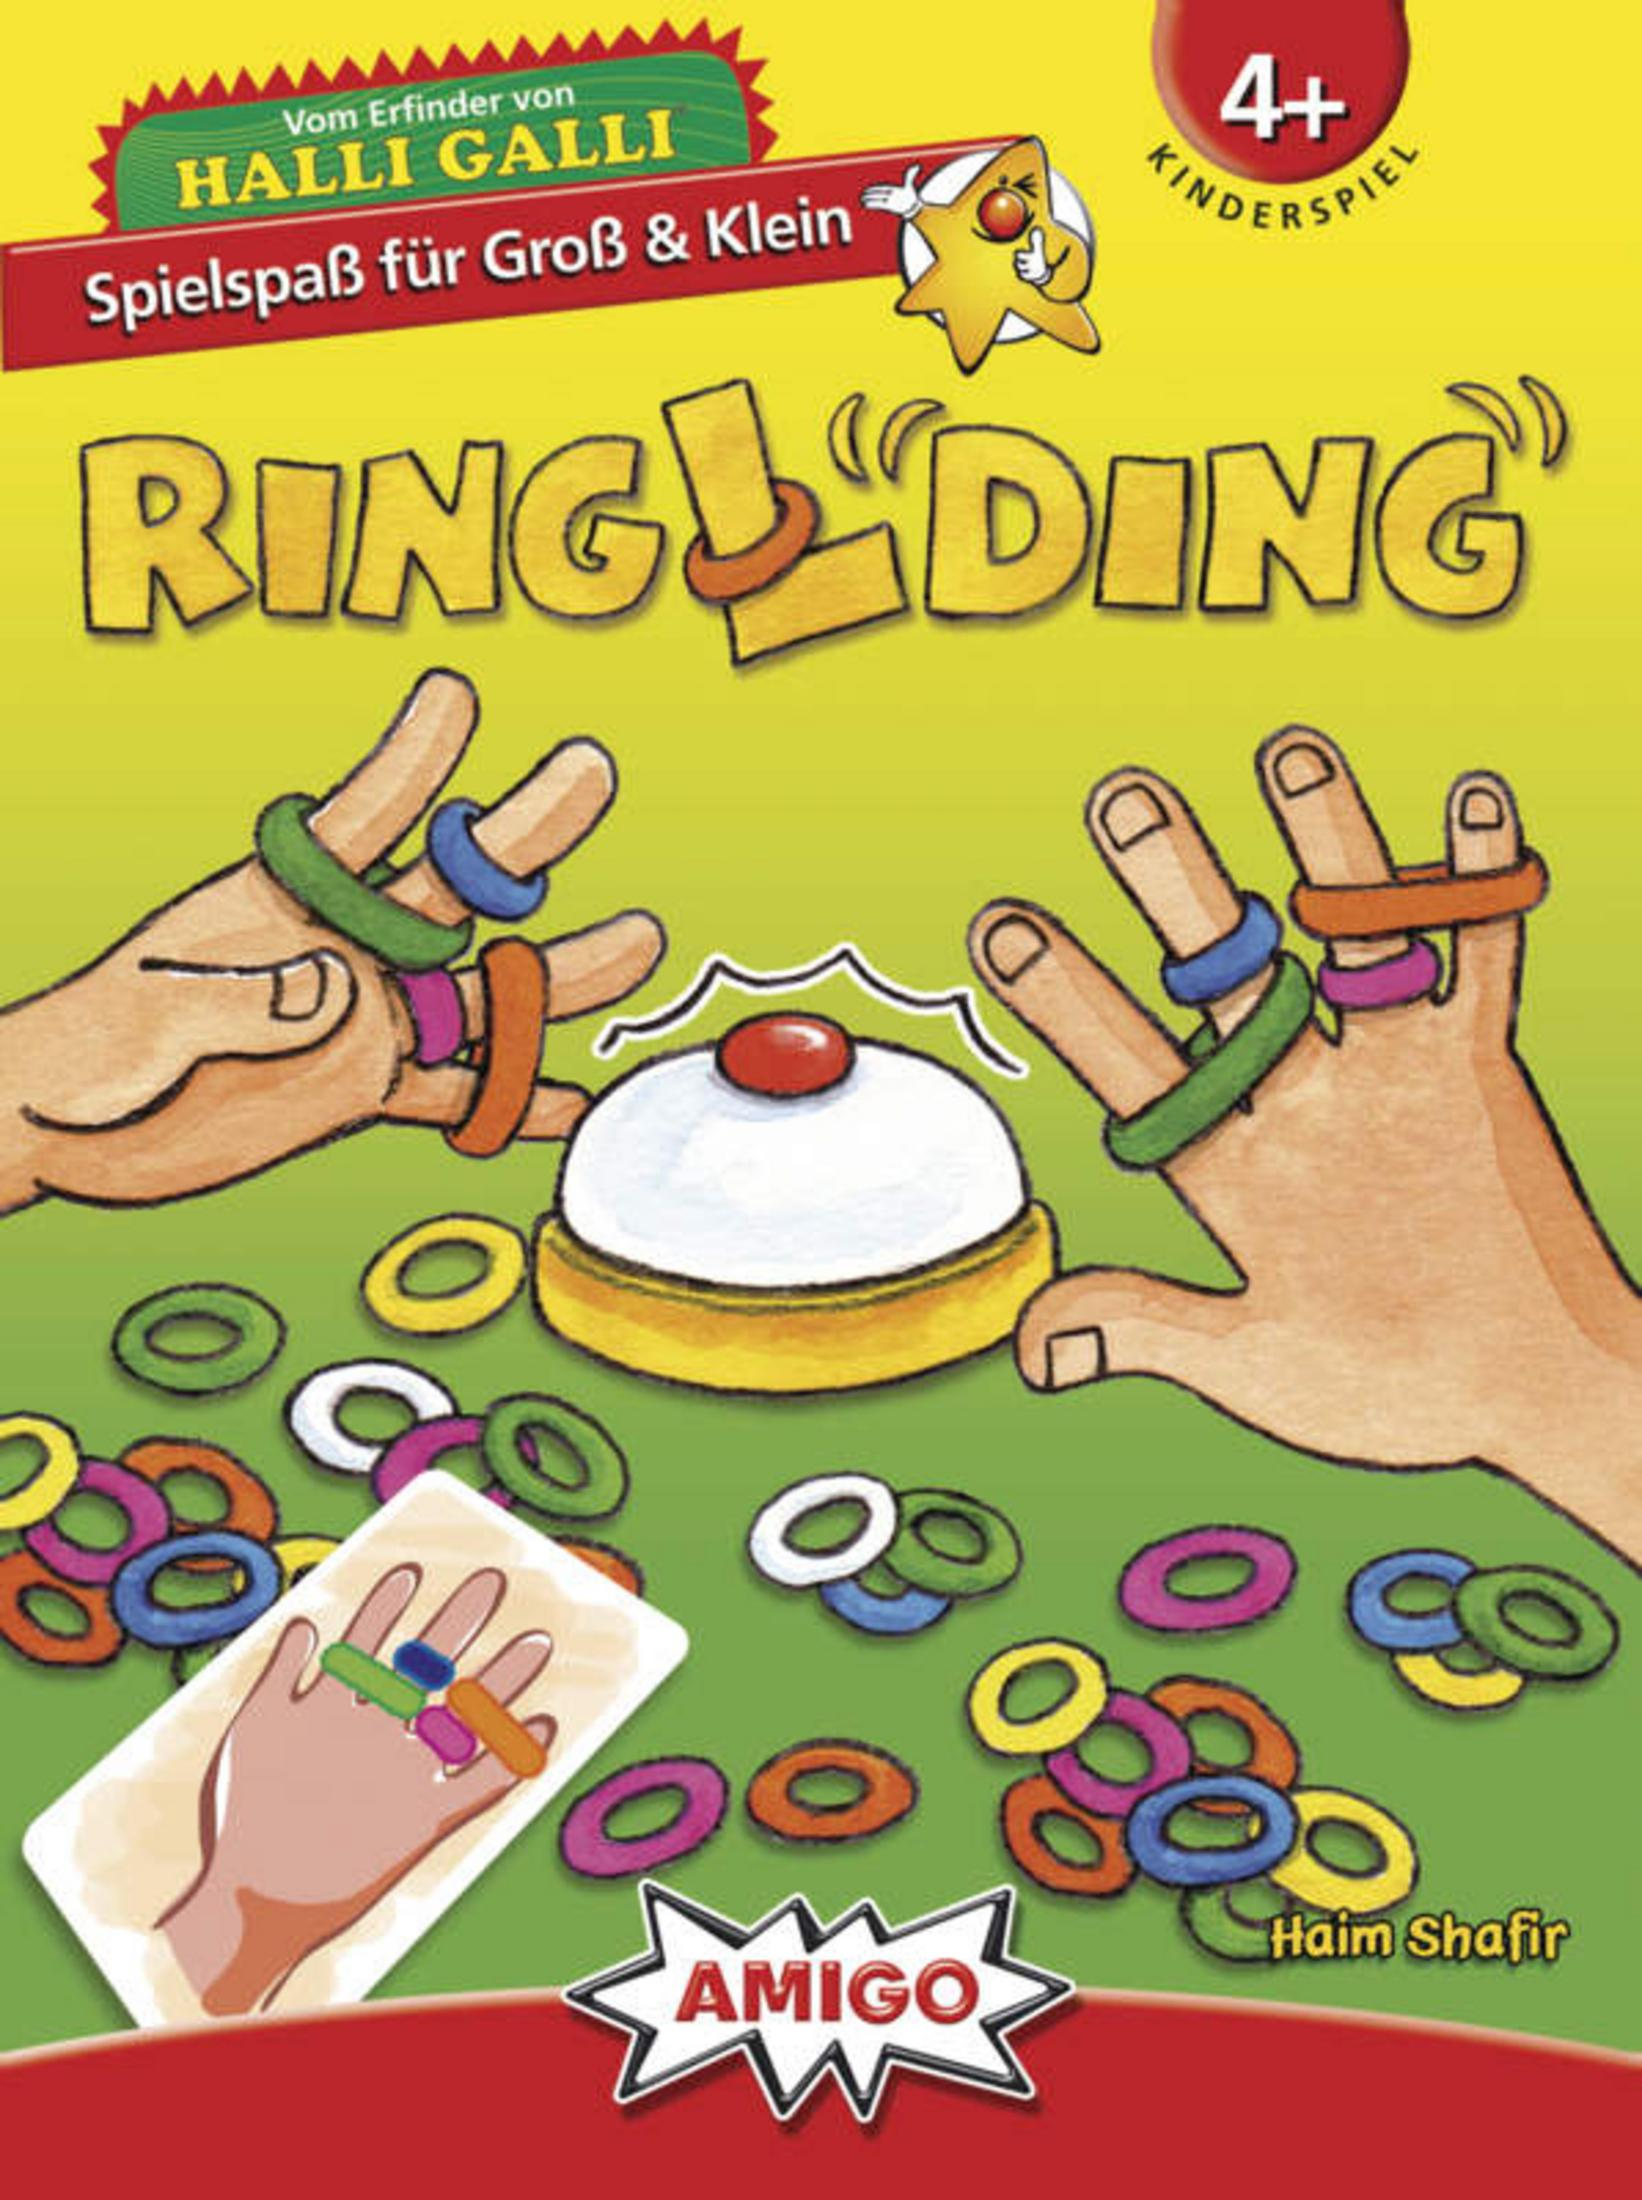 01735 AMIGO Kinderspiel RINGLDING